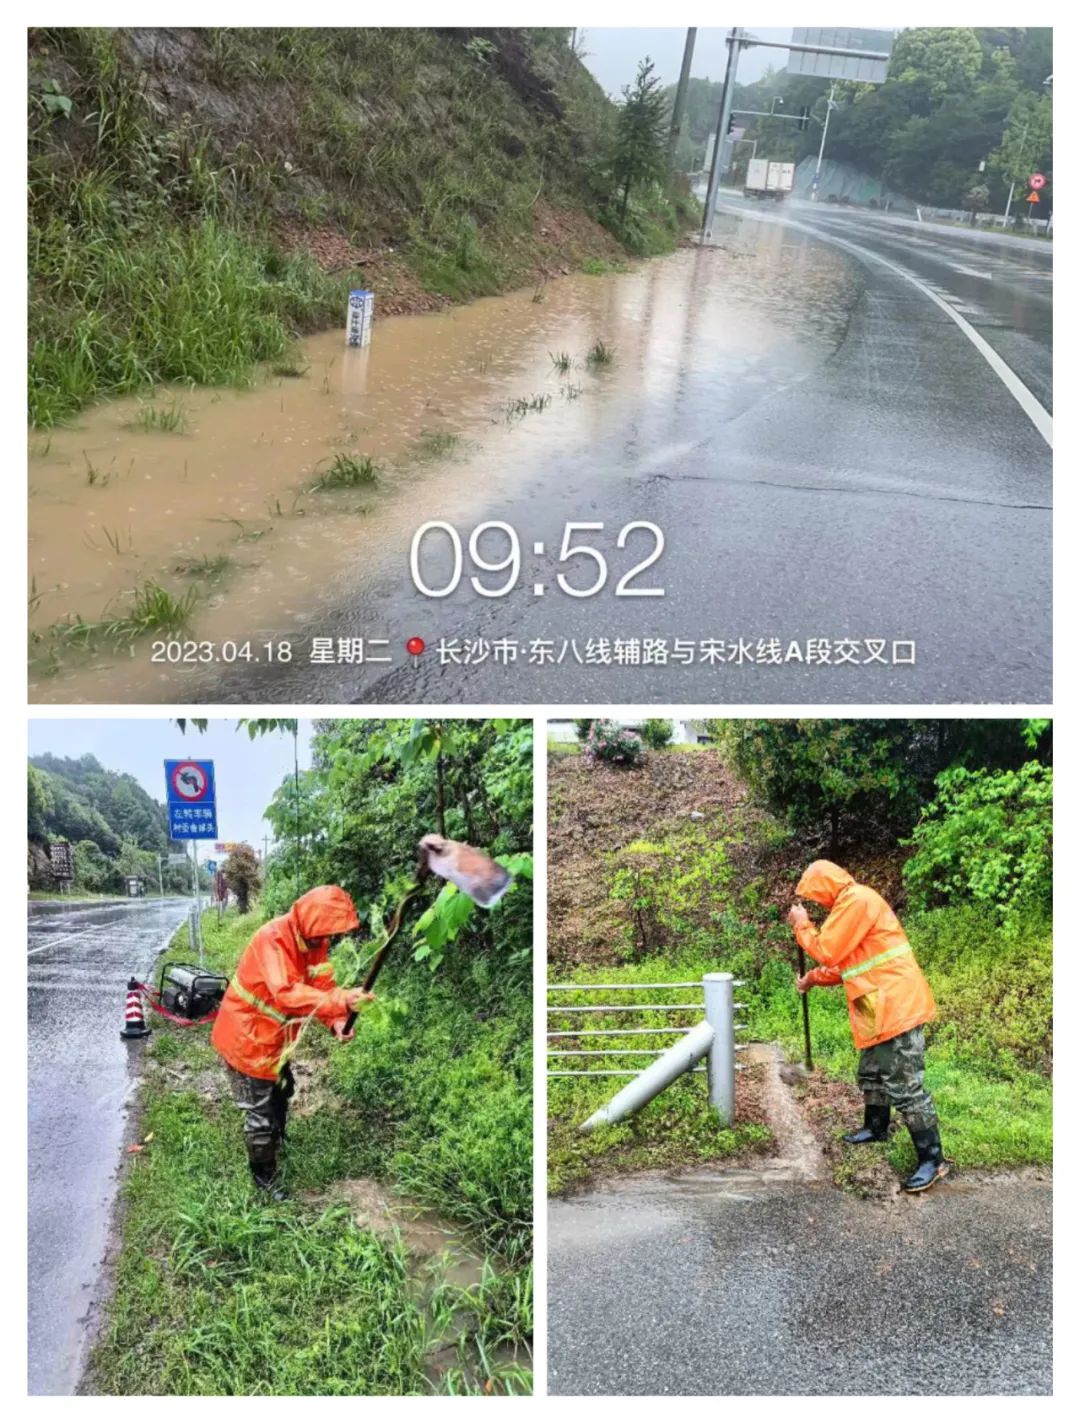 长沙大雨、暴雨蓄势待发，要注意加强防范 | 潇湘晨报网